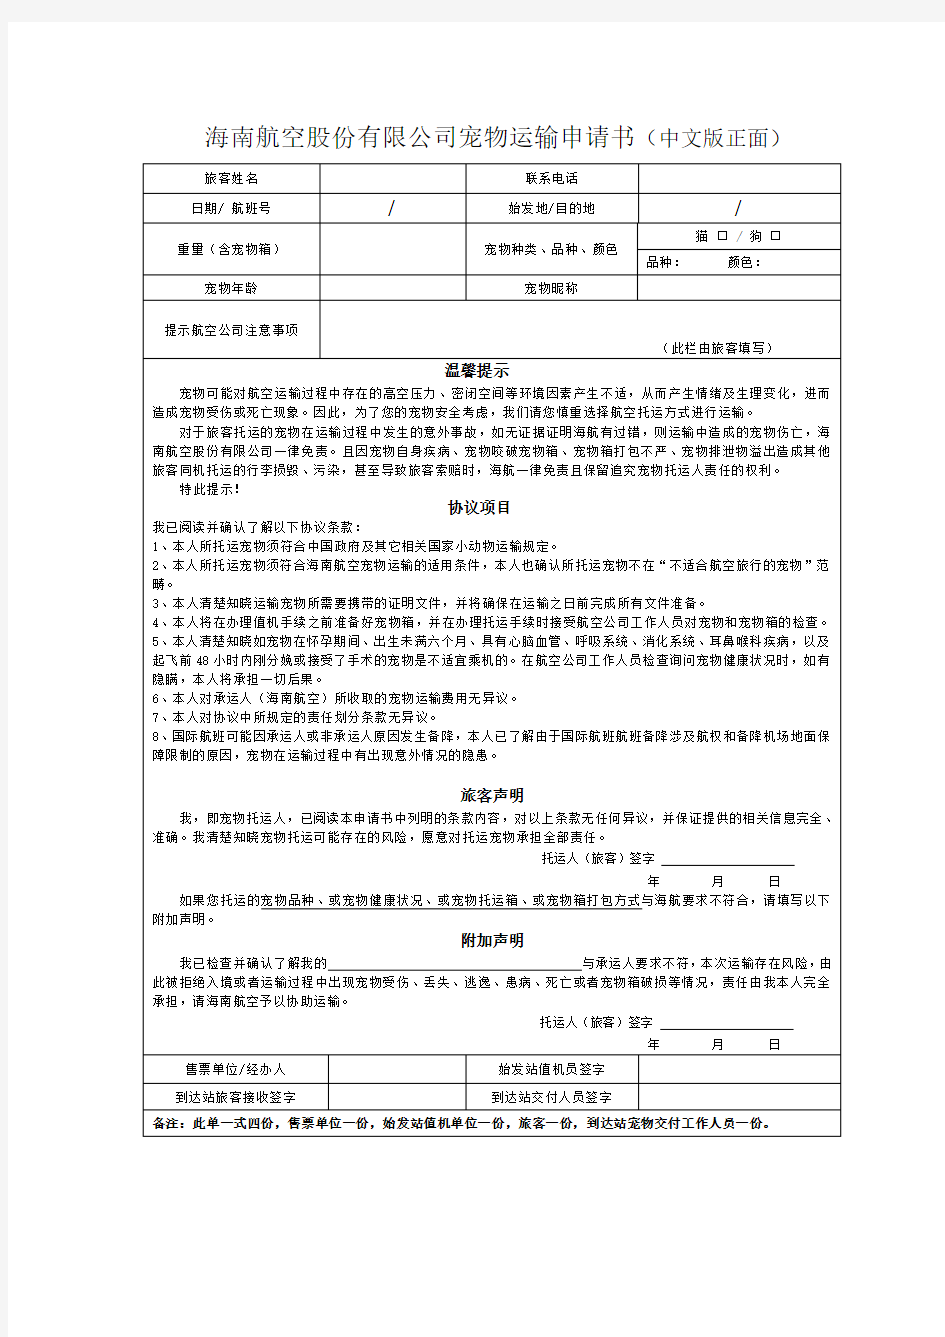 海南航空股份有限公司宠物运输申请书(中文版正面)